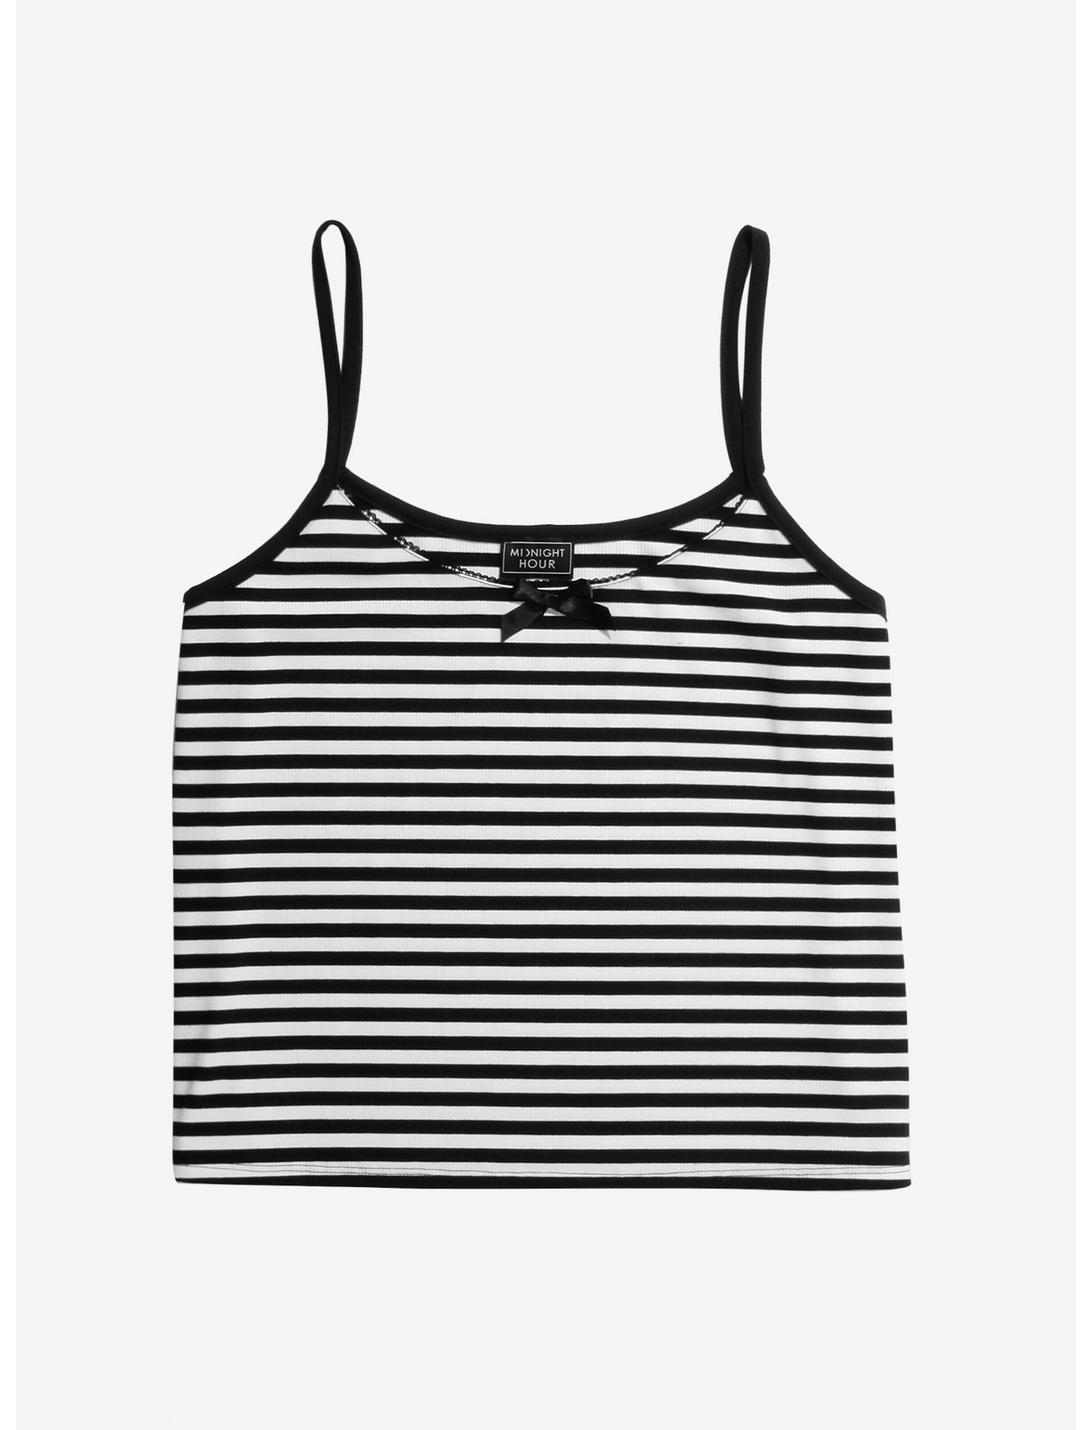 Black & White Stripe Bow Girls Strappy Tank Top Plus Size, WHITE, hi-res